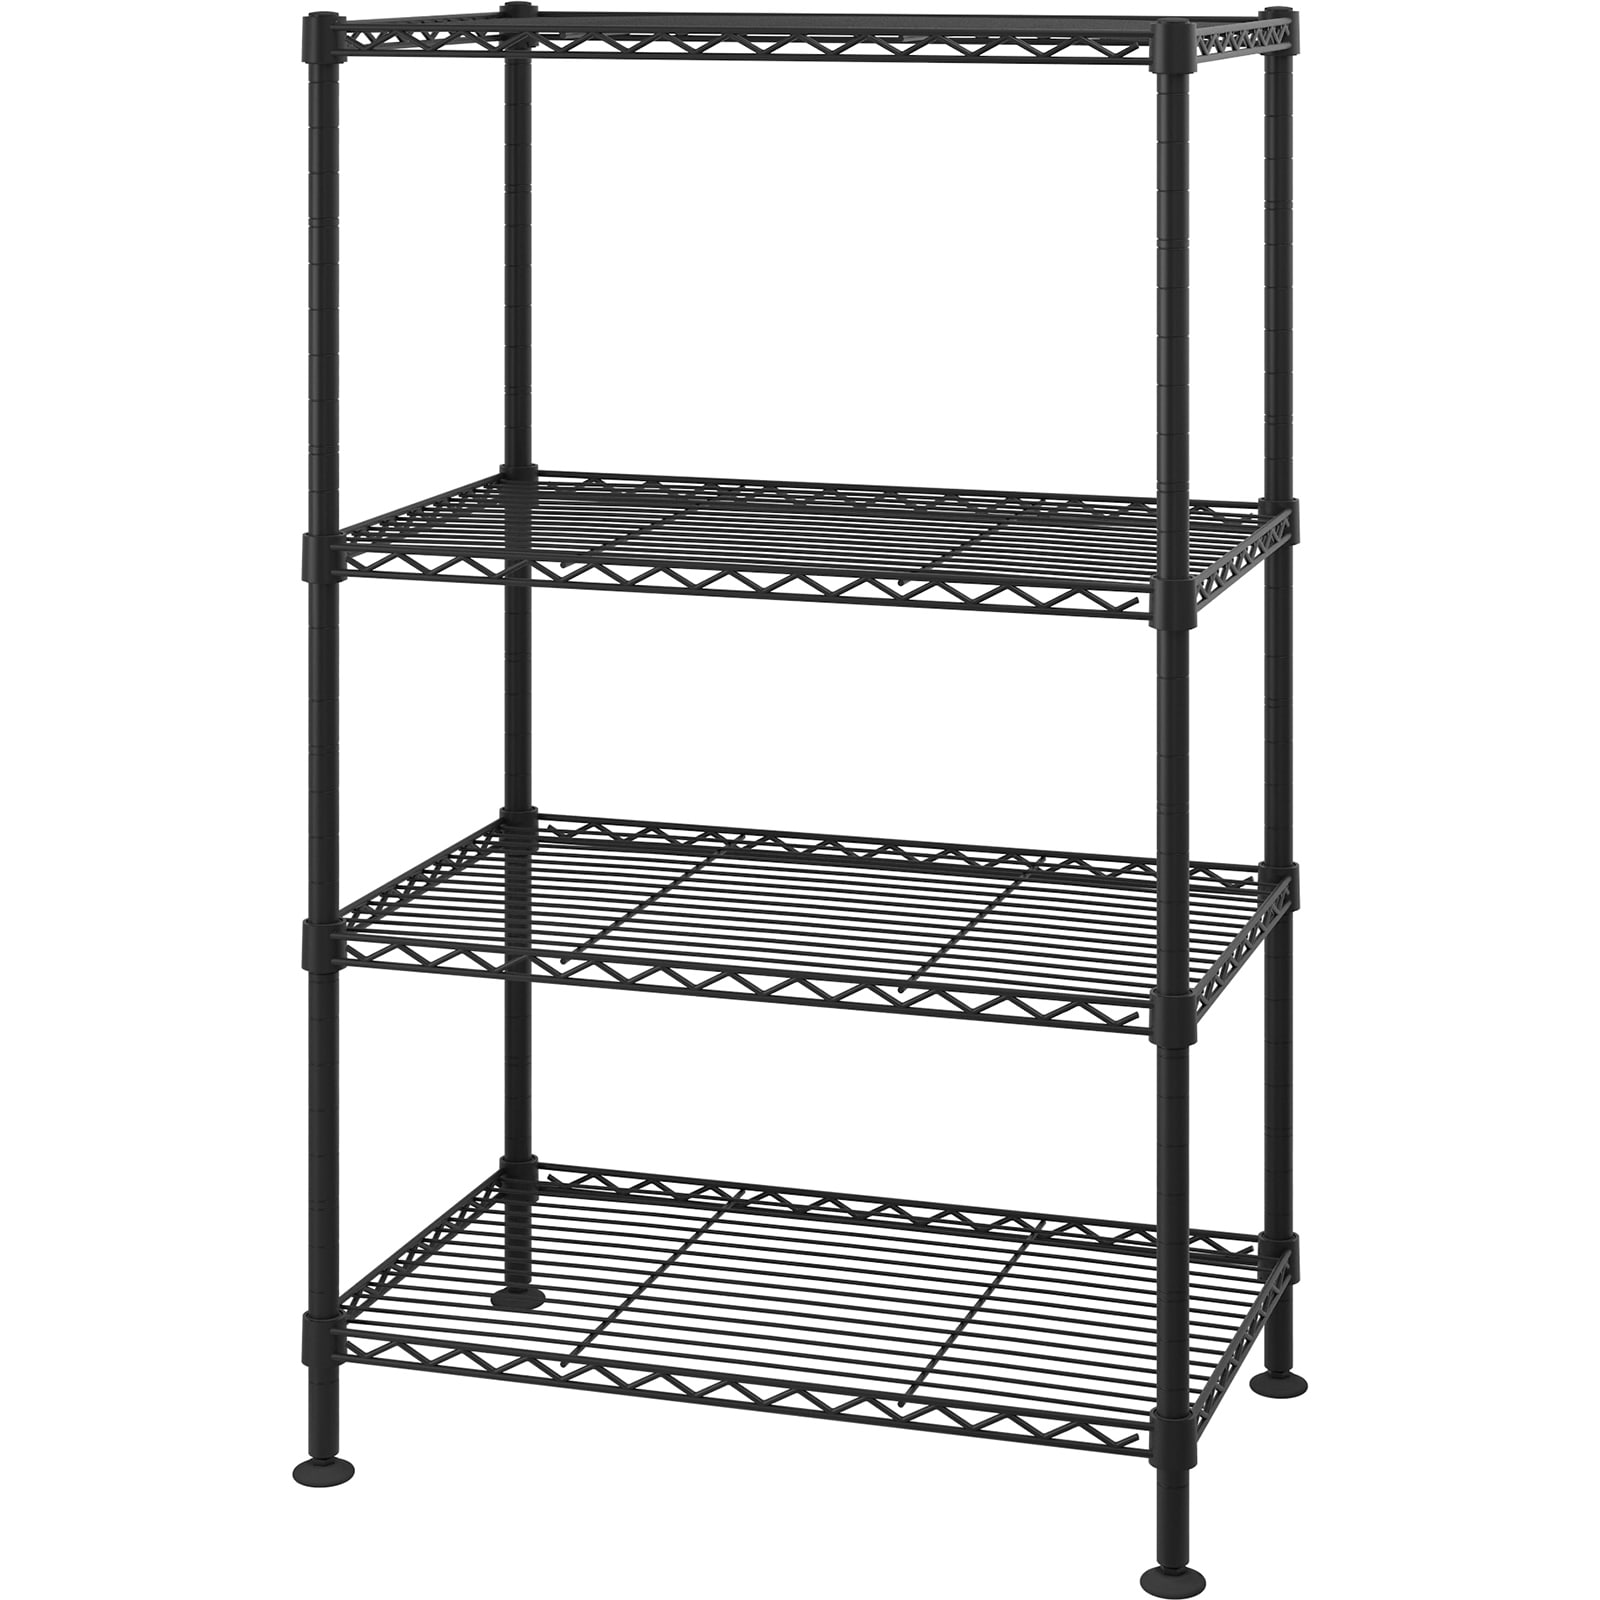 Winado 4-Tier Steel Freestanding Garage Storage Shelving Unit Black (19.69 in. W x 31.5 in. H x 11.81 in. D)